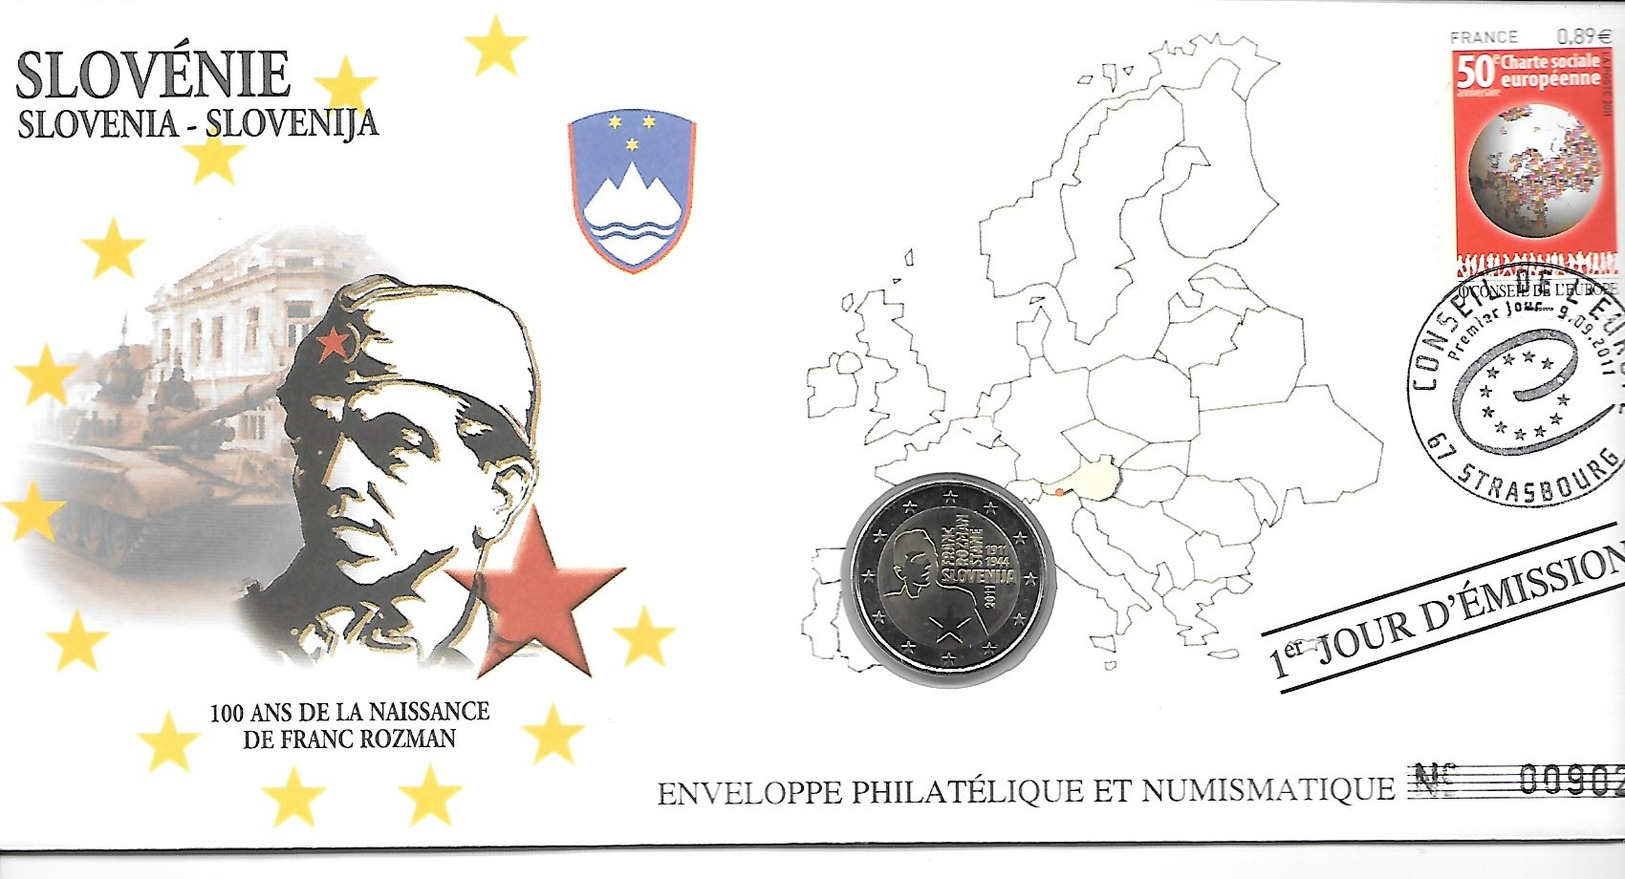 EURO SLOVENIE FDC ENVELOPPE PHILATELIQUE ET NUMISMATIQUE DU 1er JOUR D'éMISSION (A - Slovénie